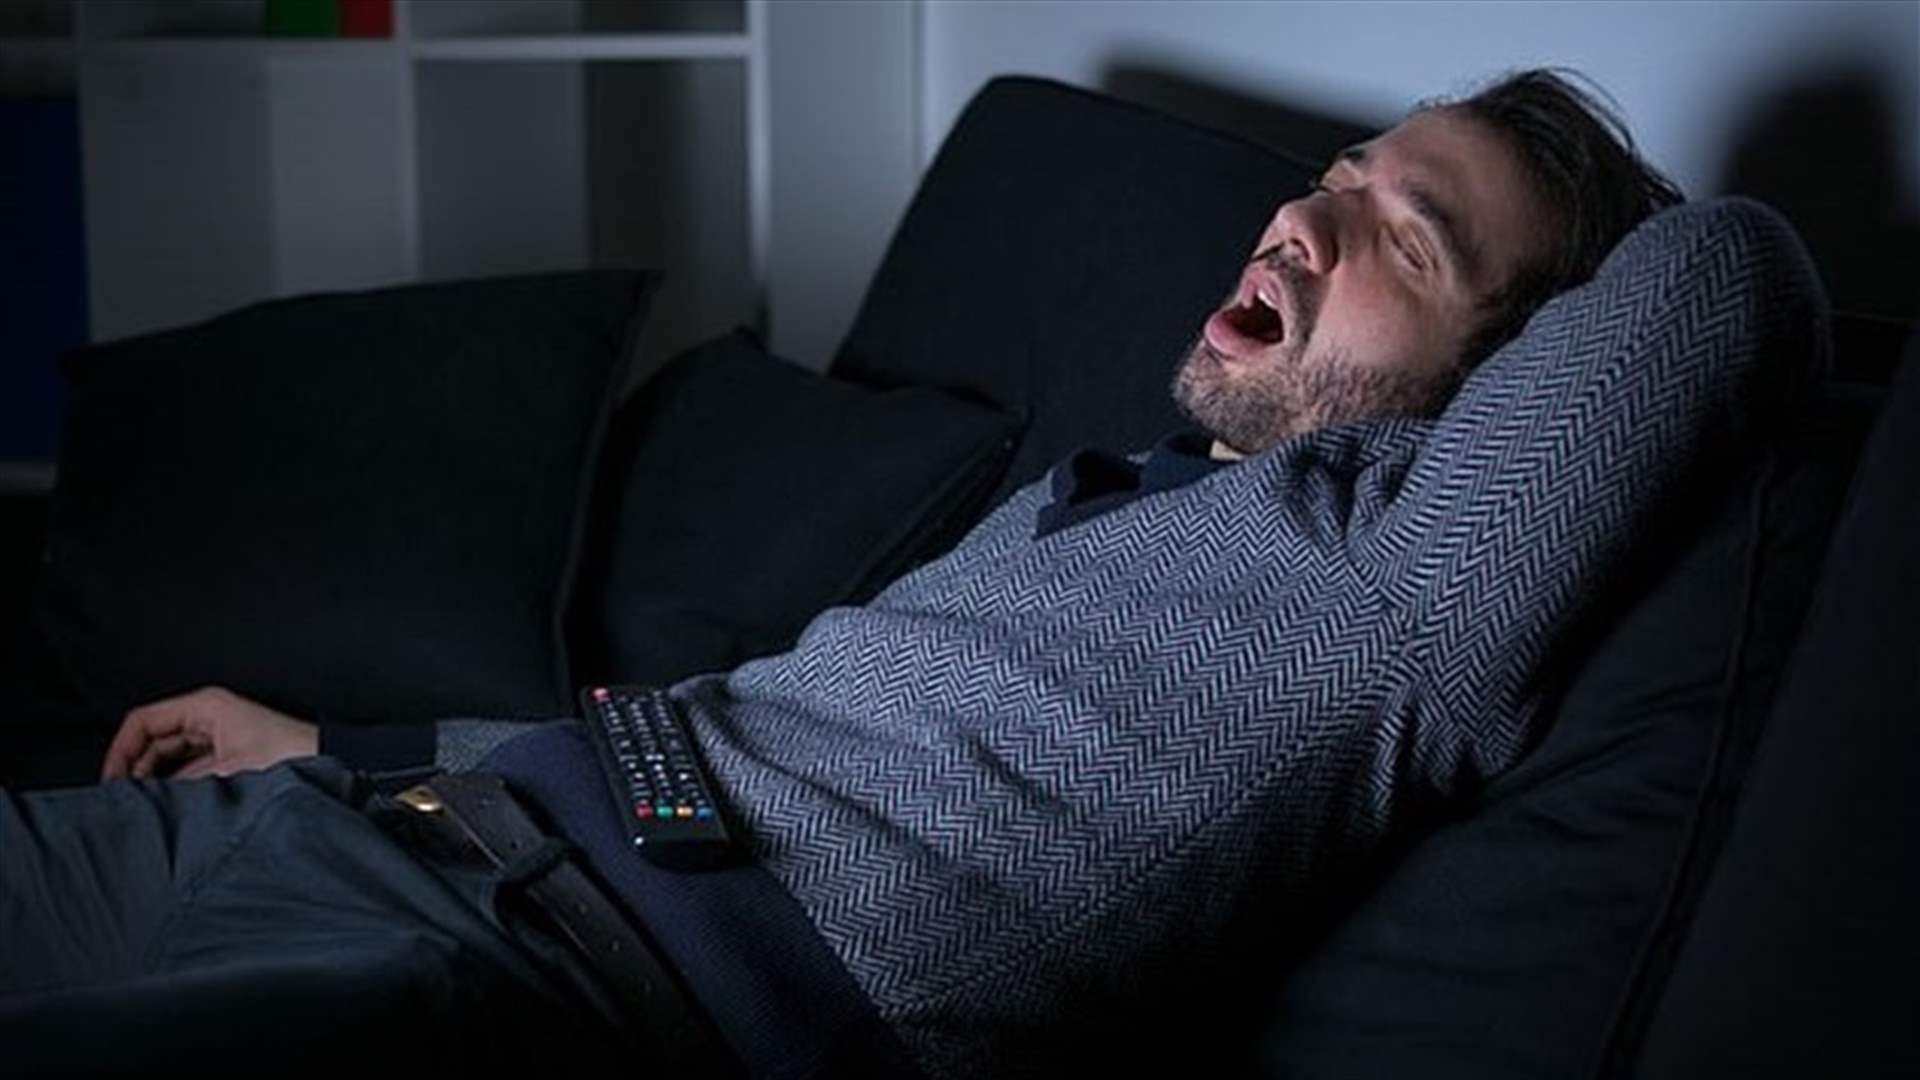 ‎ دراسة جديدة... ما علاقة مشاهدة التلفاز لأكثر من 4 ساعات بانقطاع التنفس أثناء النوم؟